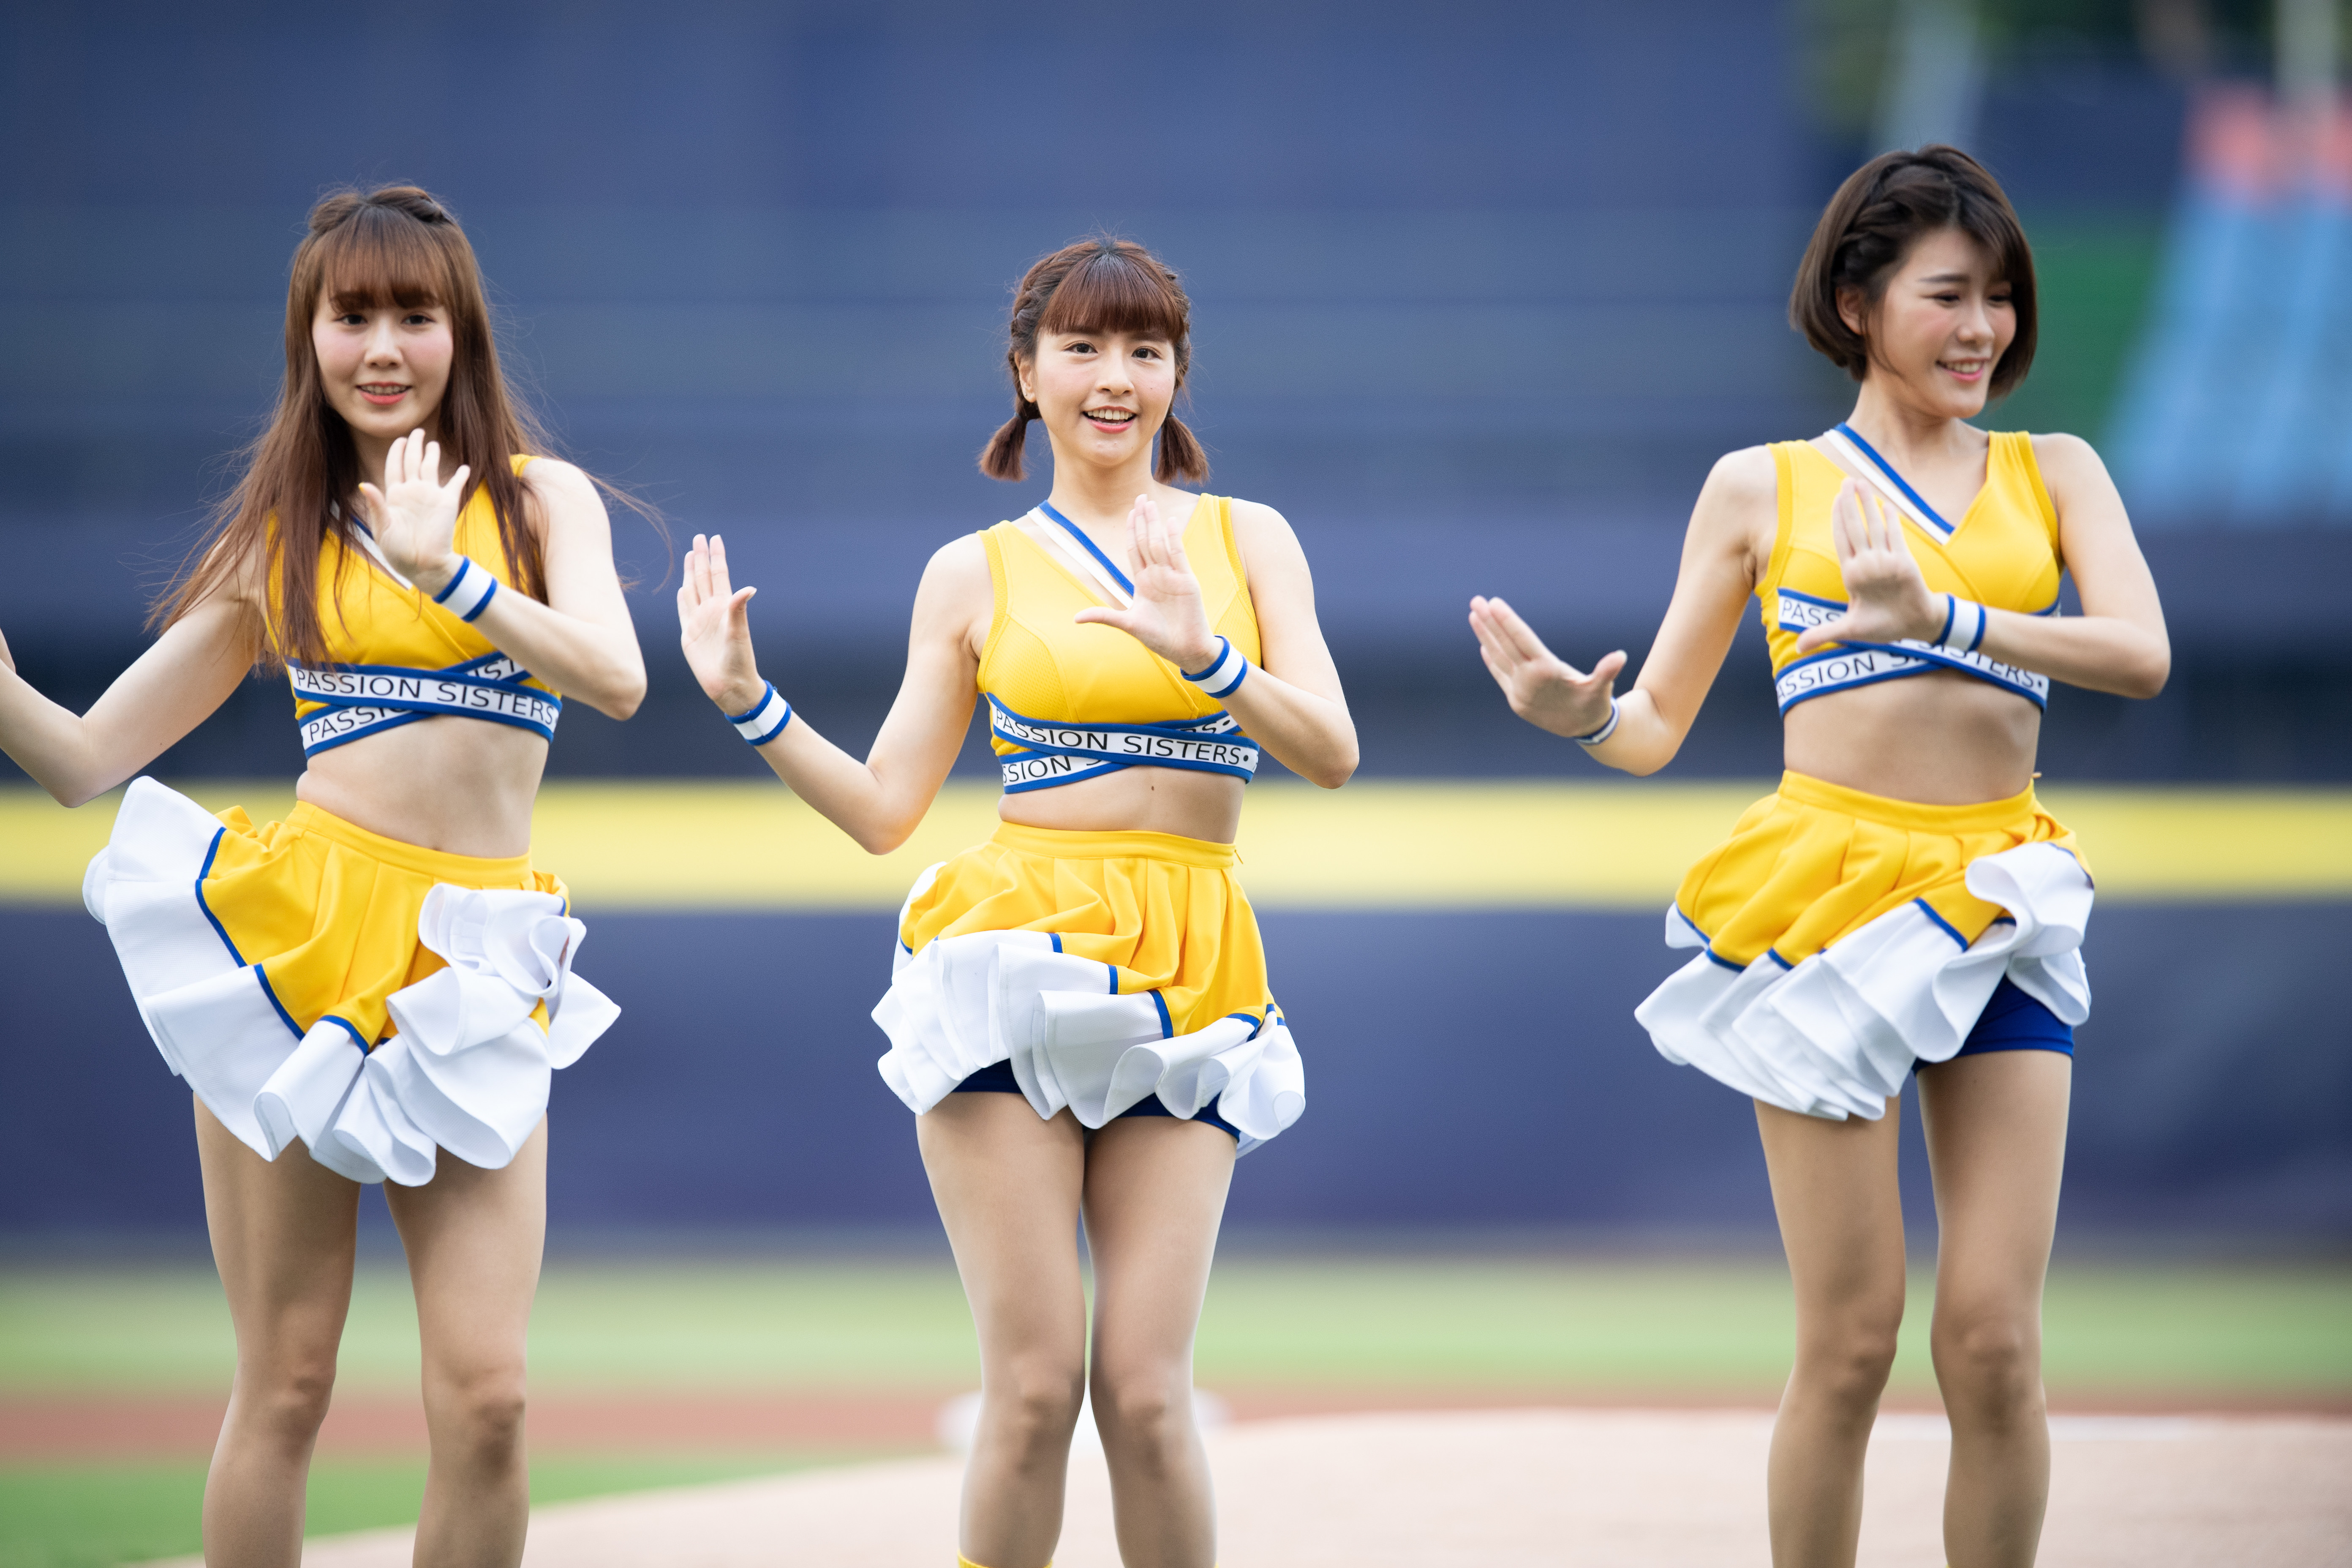 台湾プロ野球チーム「中信兄弟（中信ブラザーズ）」のチアリーダー・峮峮（チュンチュン）。「可愛すぎるチア」として、台湾だけでなく、日本でも大人気。photo by Getty Image